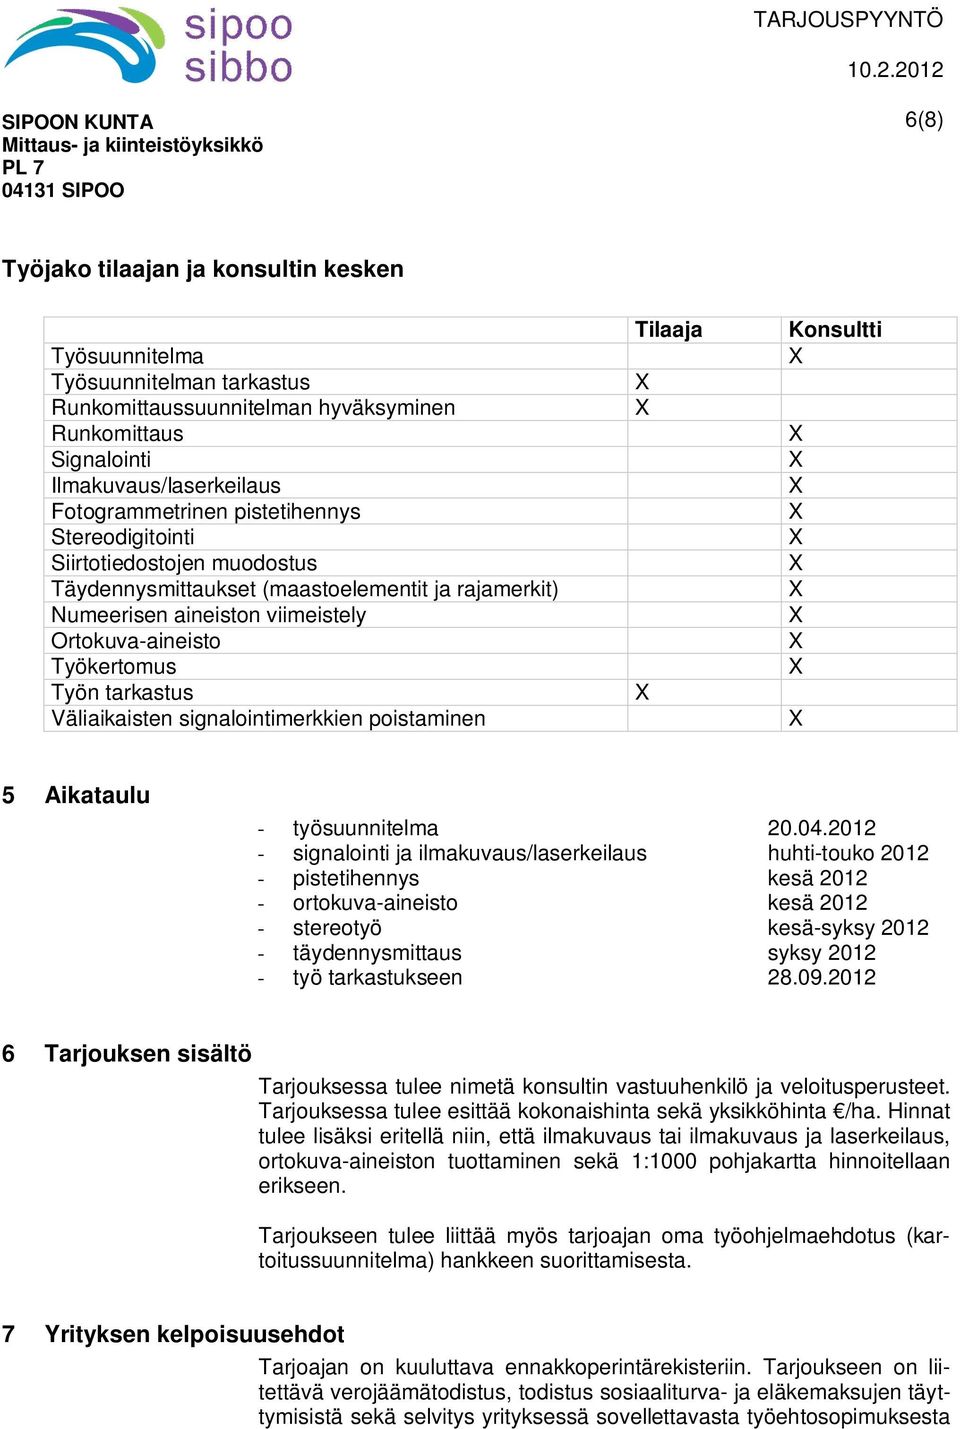 Väliaikaisten signalointimerkkien poistaminen Tilaaja Konsultti 5 Aikataulu - työsuunnitelma 20.04.